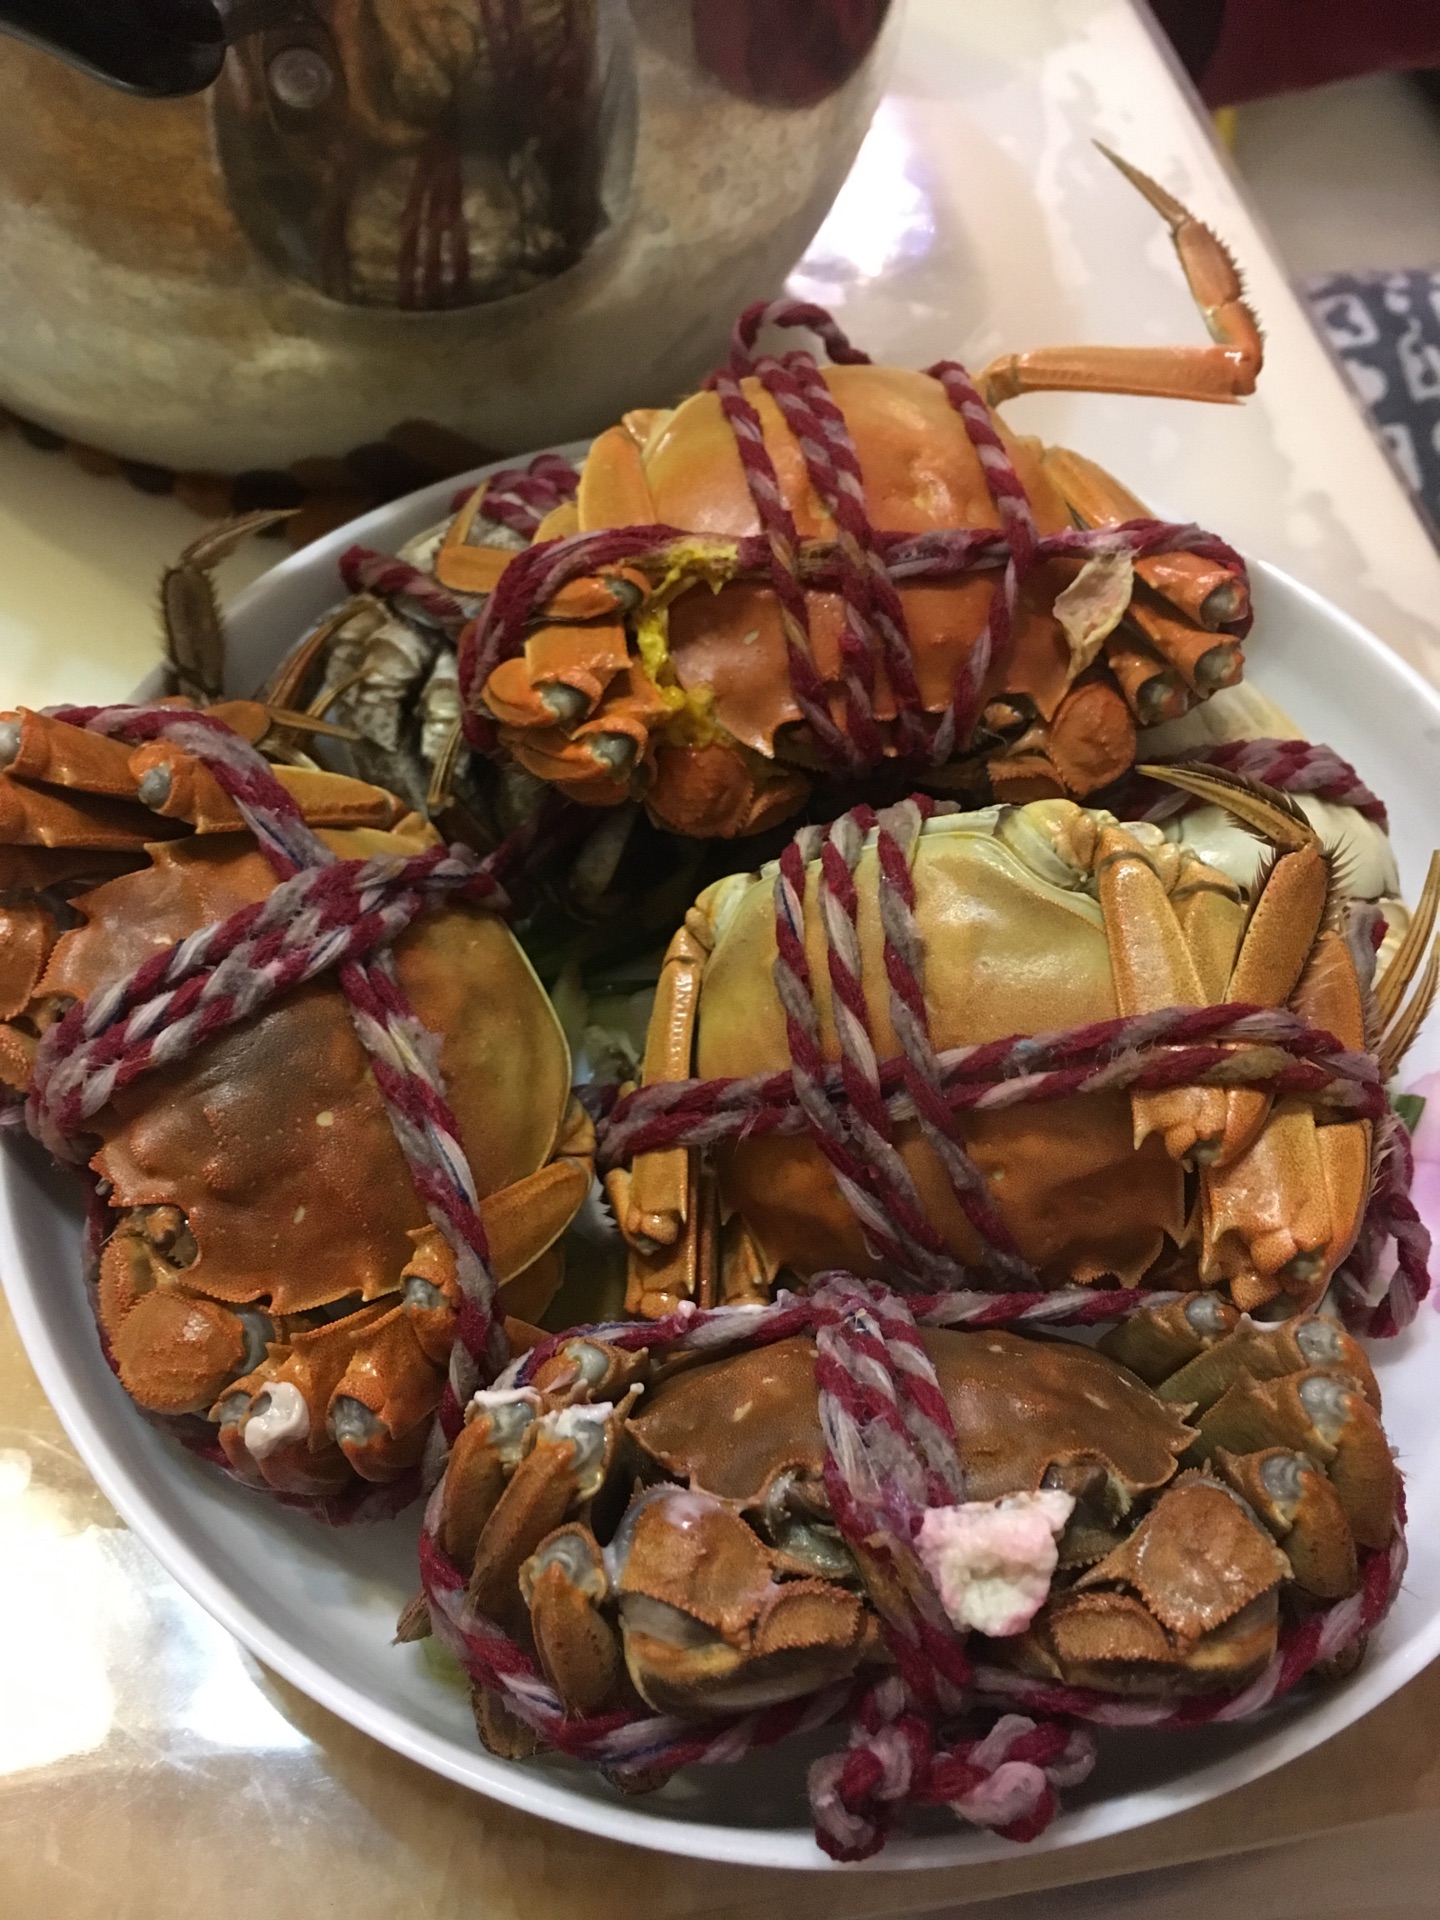 清蒸螃蟹的做法_【图解】清蒸螃蟹怎么做如何做好吃_清蒸螃蟹家常做法大全_美食组长_豆果美食